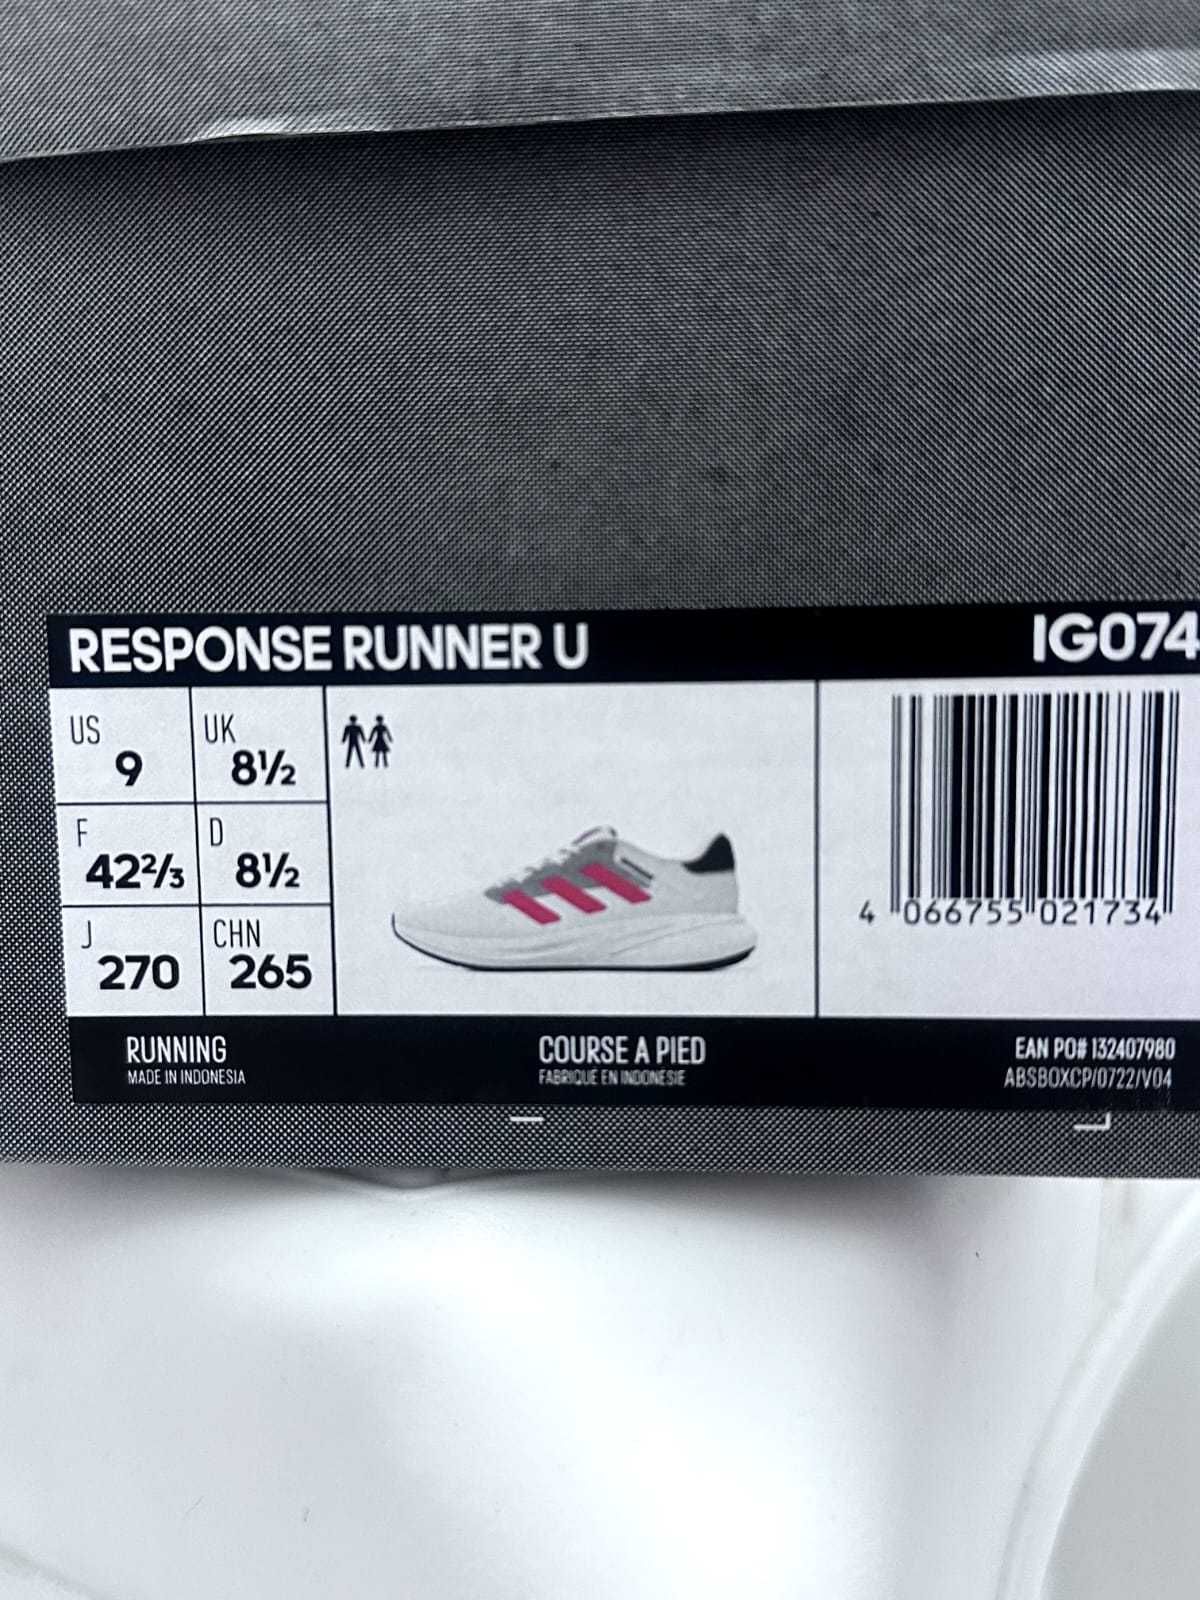 мужские кроссовки Адидас Adidas Response Runner, р.42-42,5, оригинал